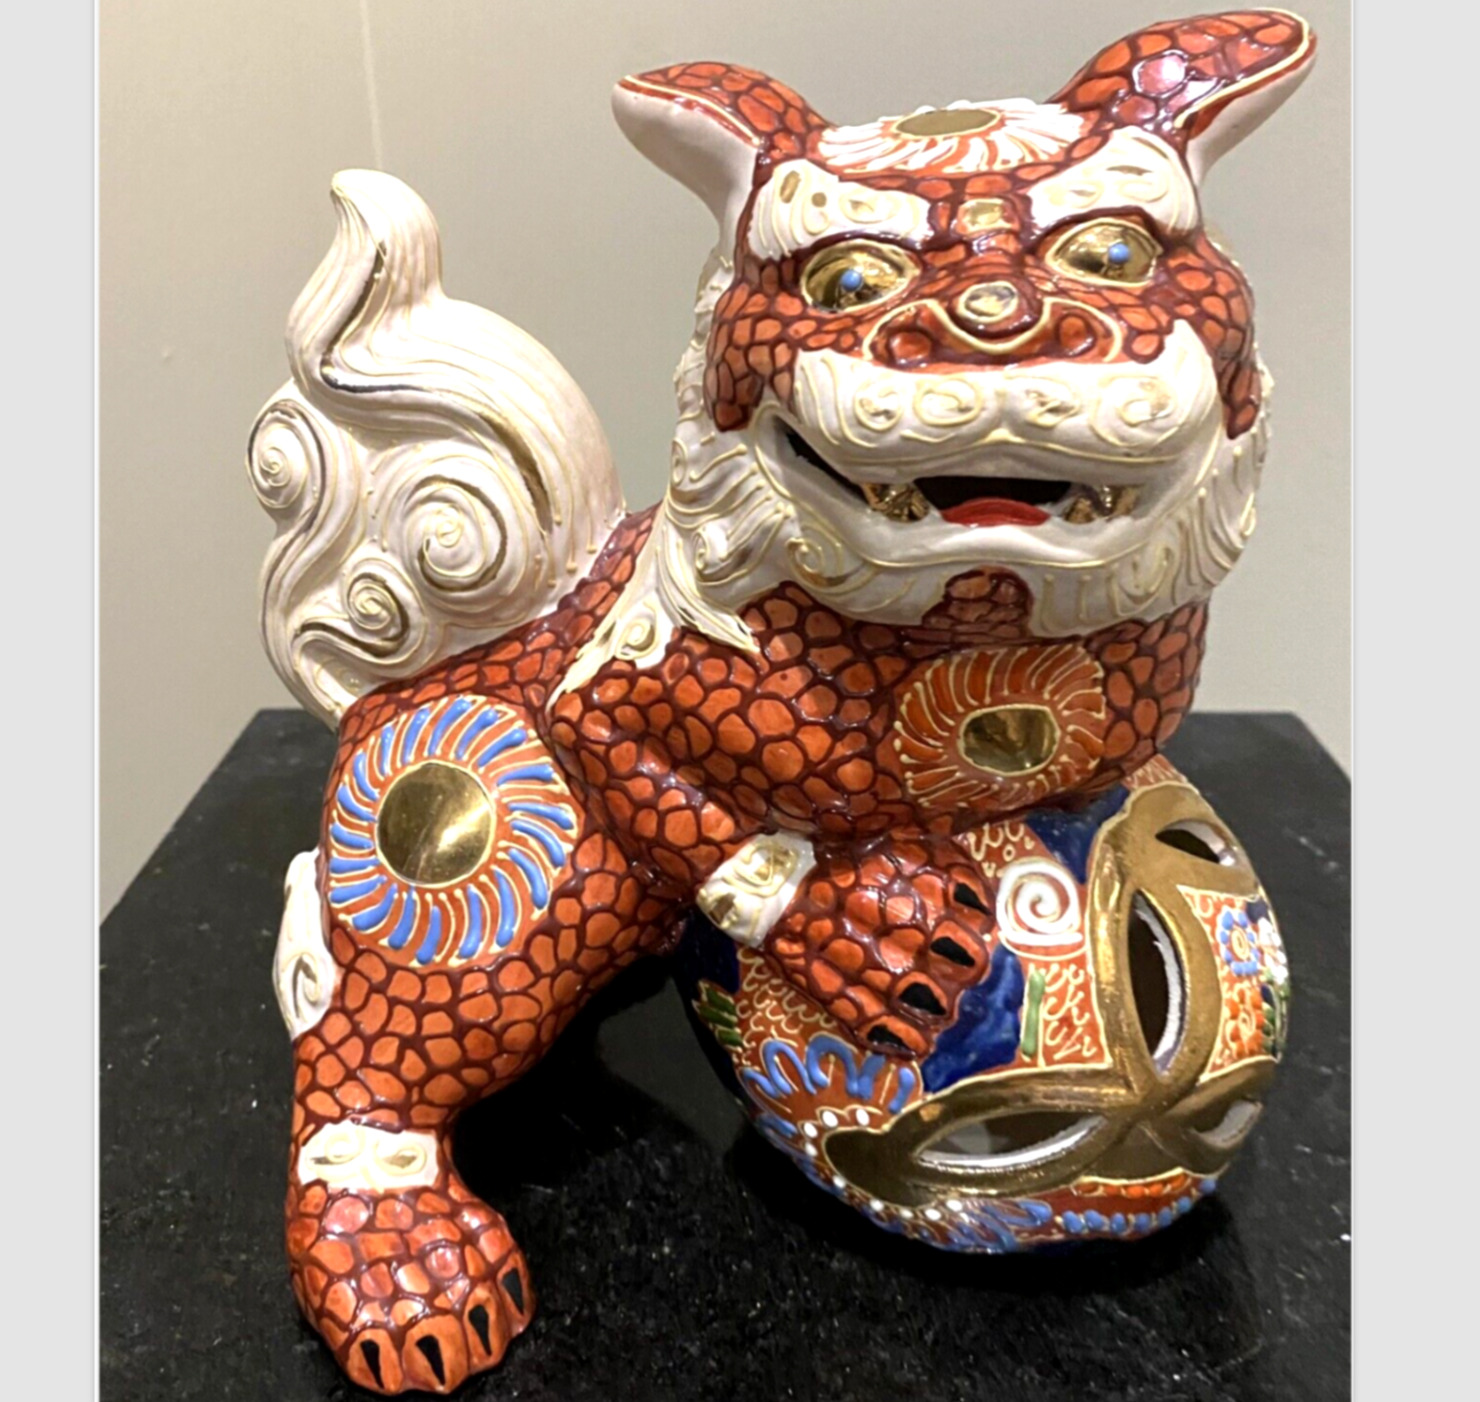 Vintage Shishi Porcelain Lion Foo Dog Figurine Statue Ornate Red Andrea by Sadek